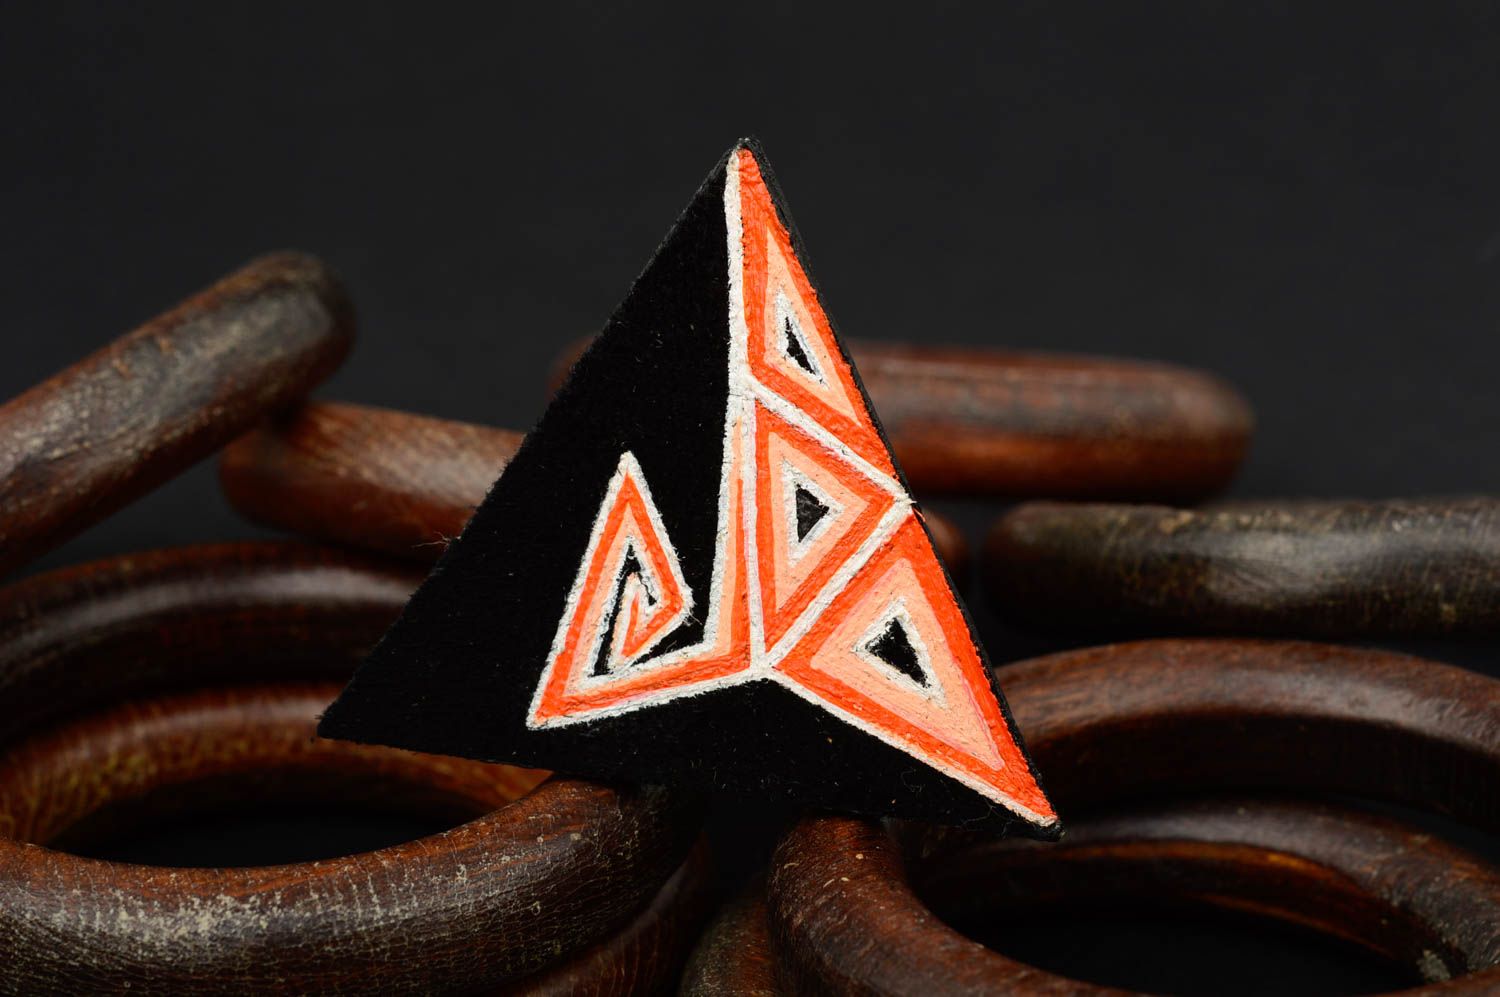 Кольцо ручной работы бижутерия из кожи треугольное женское кольцо с оранжевым фото 1